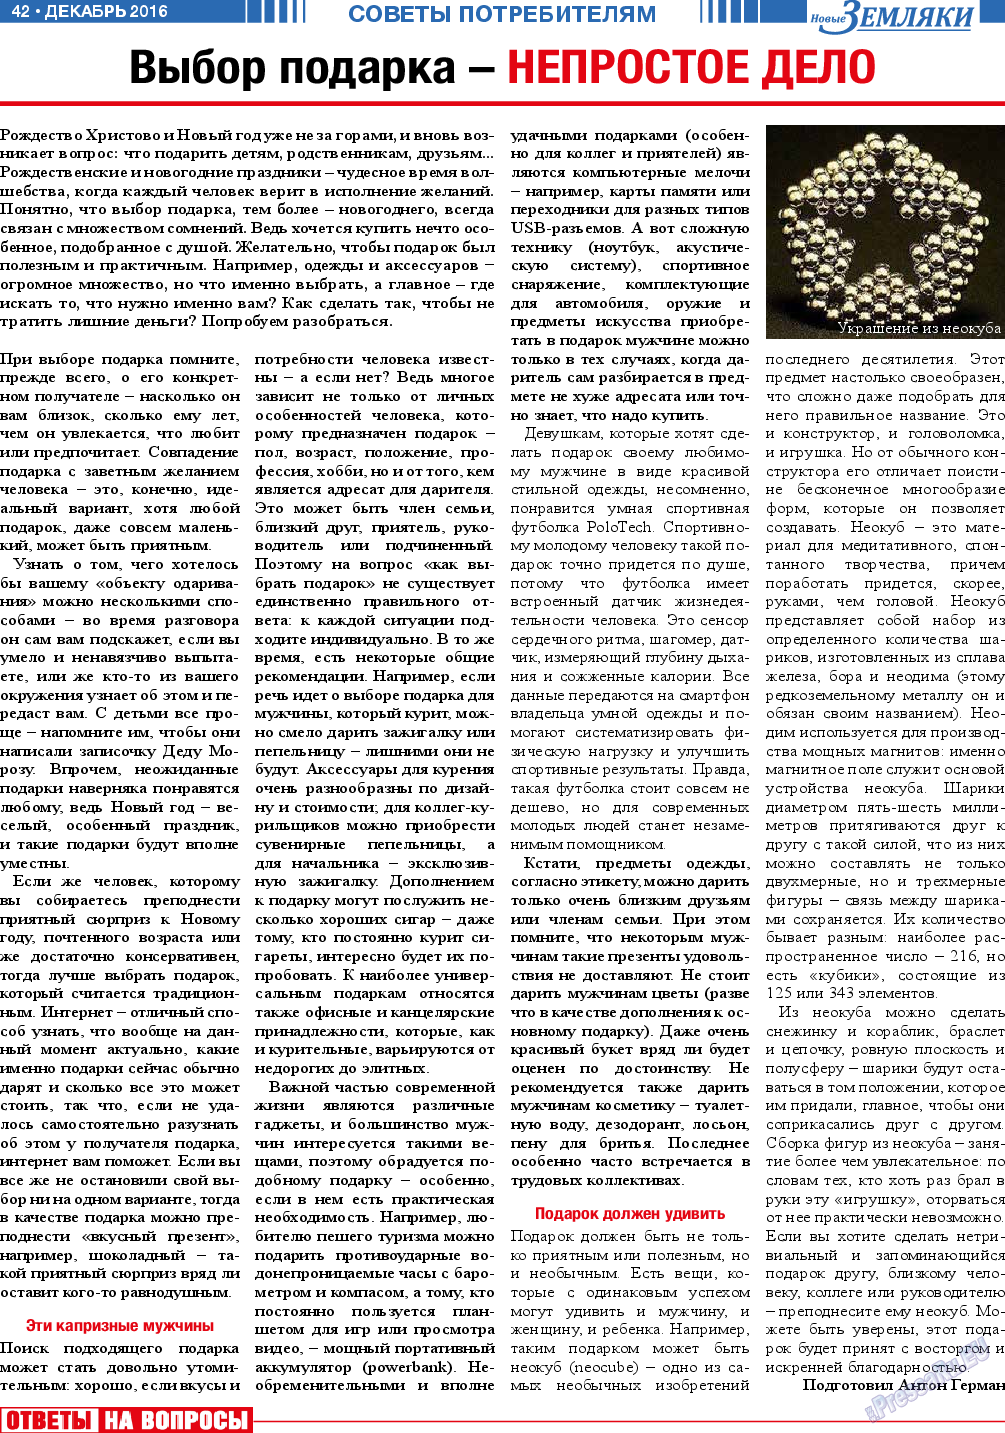 Новые Земляки, газета. 2016 №12 стр.42